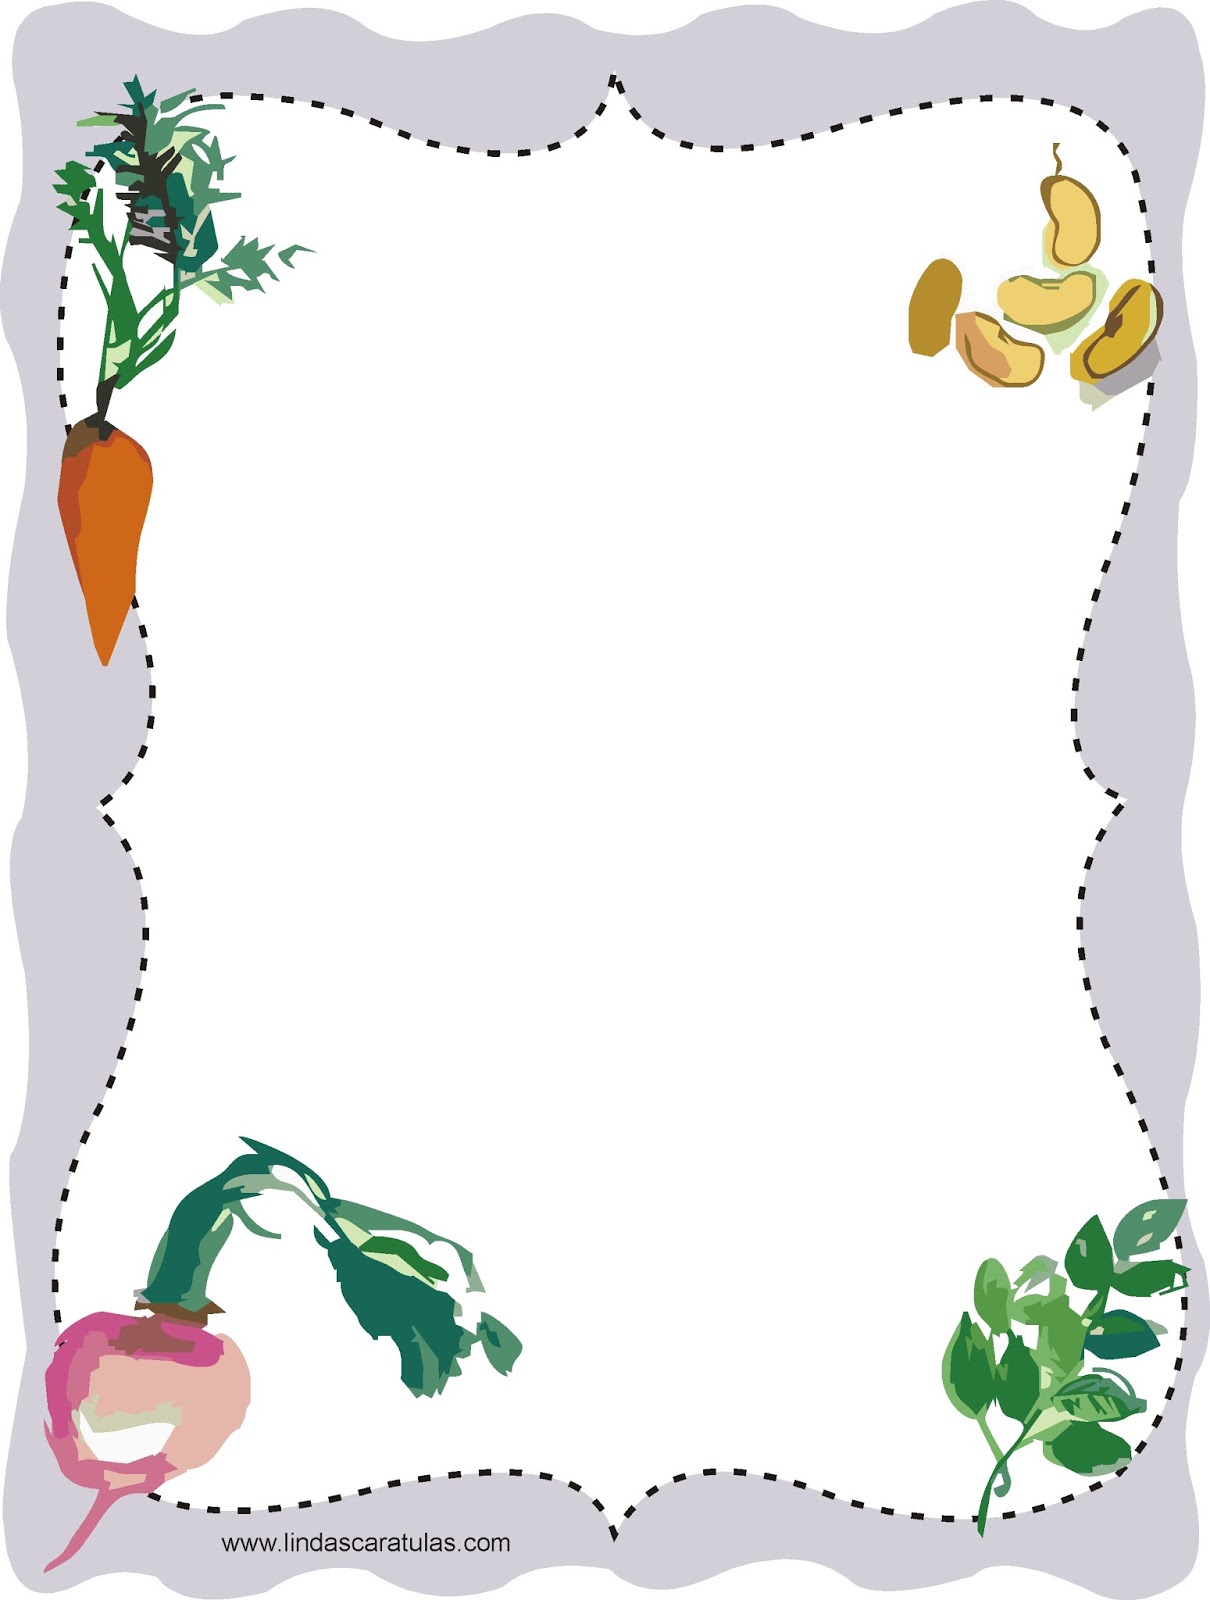 LINDAS CARATULAS: Caratulas verduras